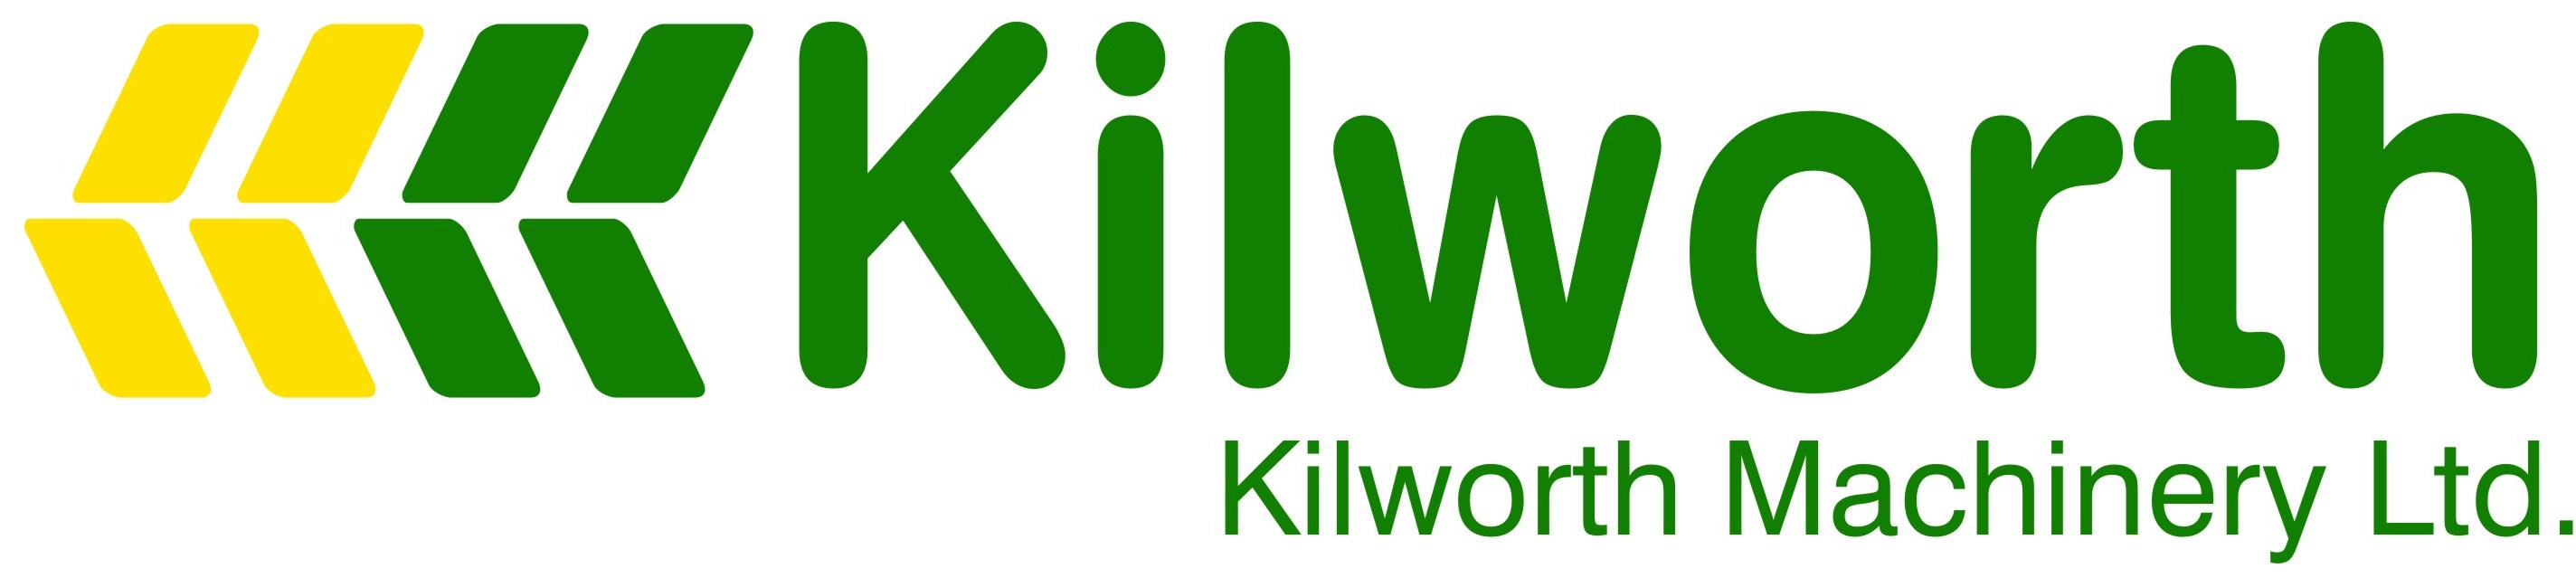 Kilworth